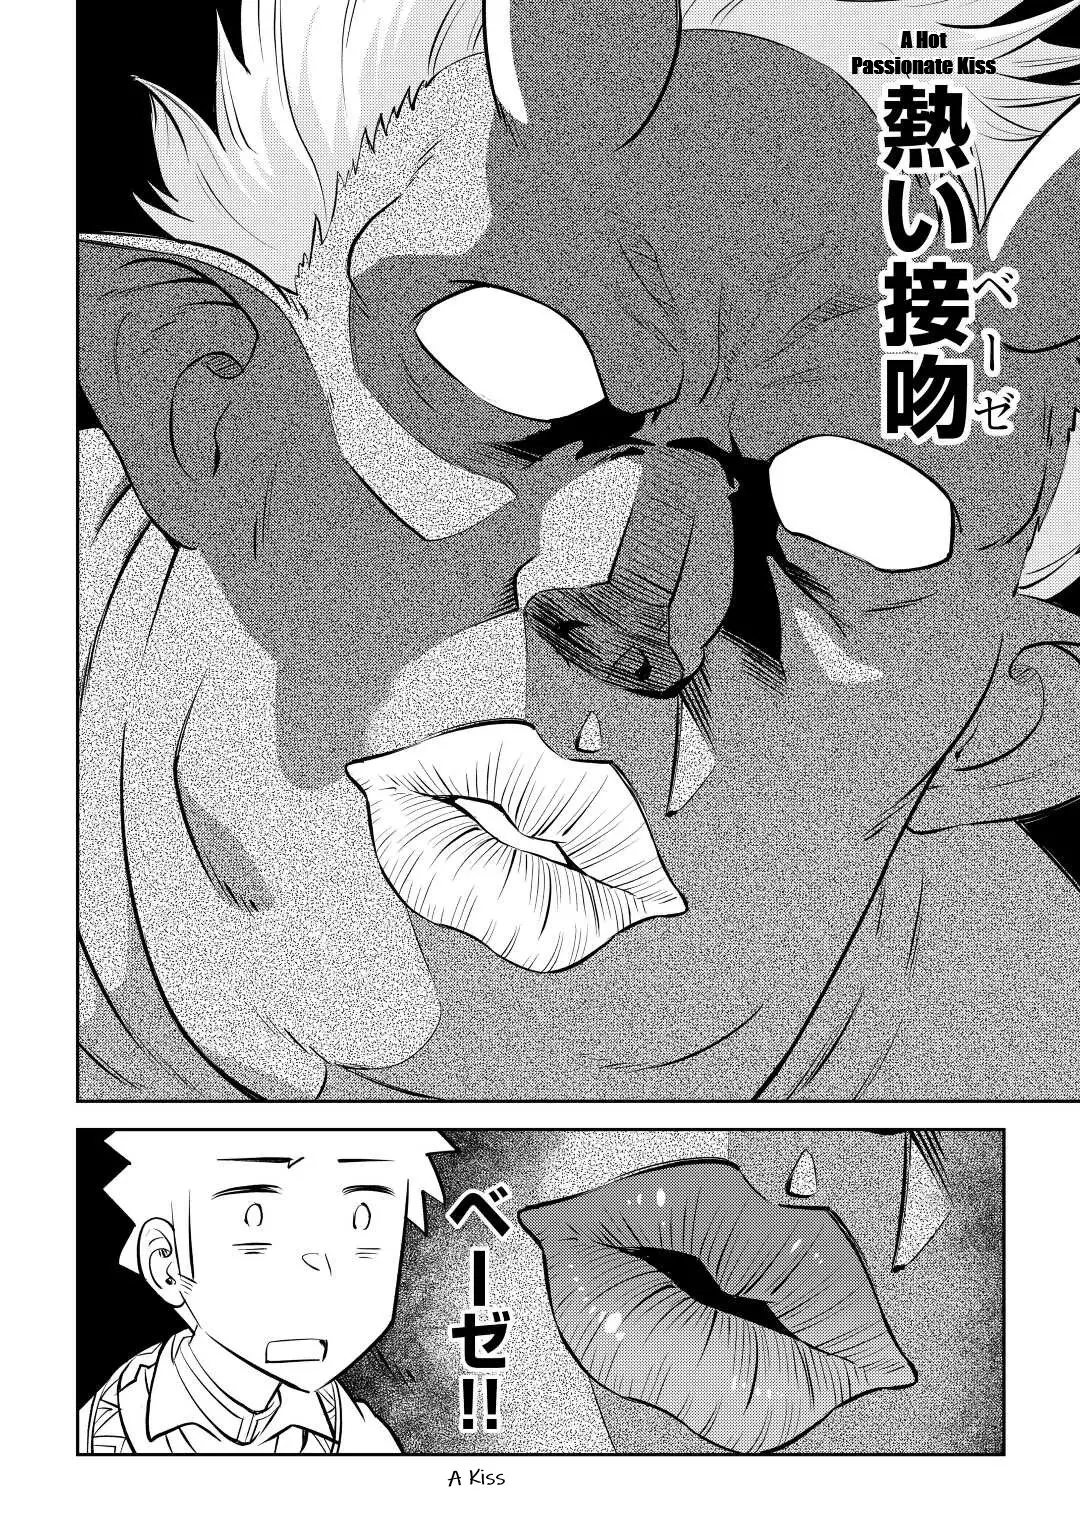 Toaru Ossan No Vrmmo Katsudouki - 82 page 16-95ca98ff